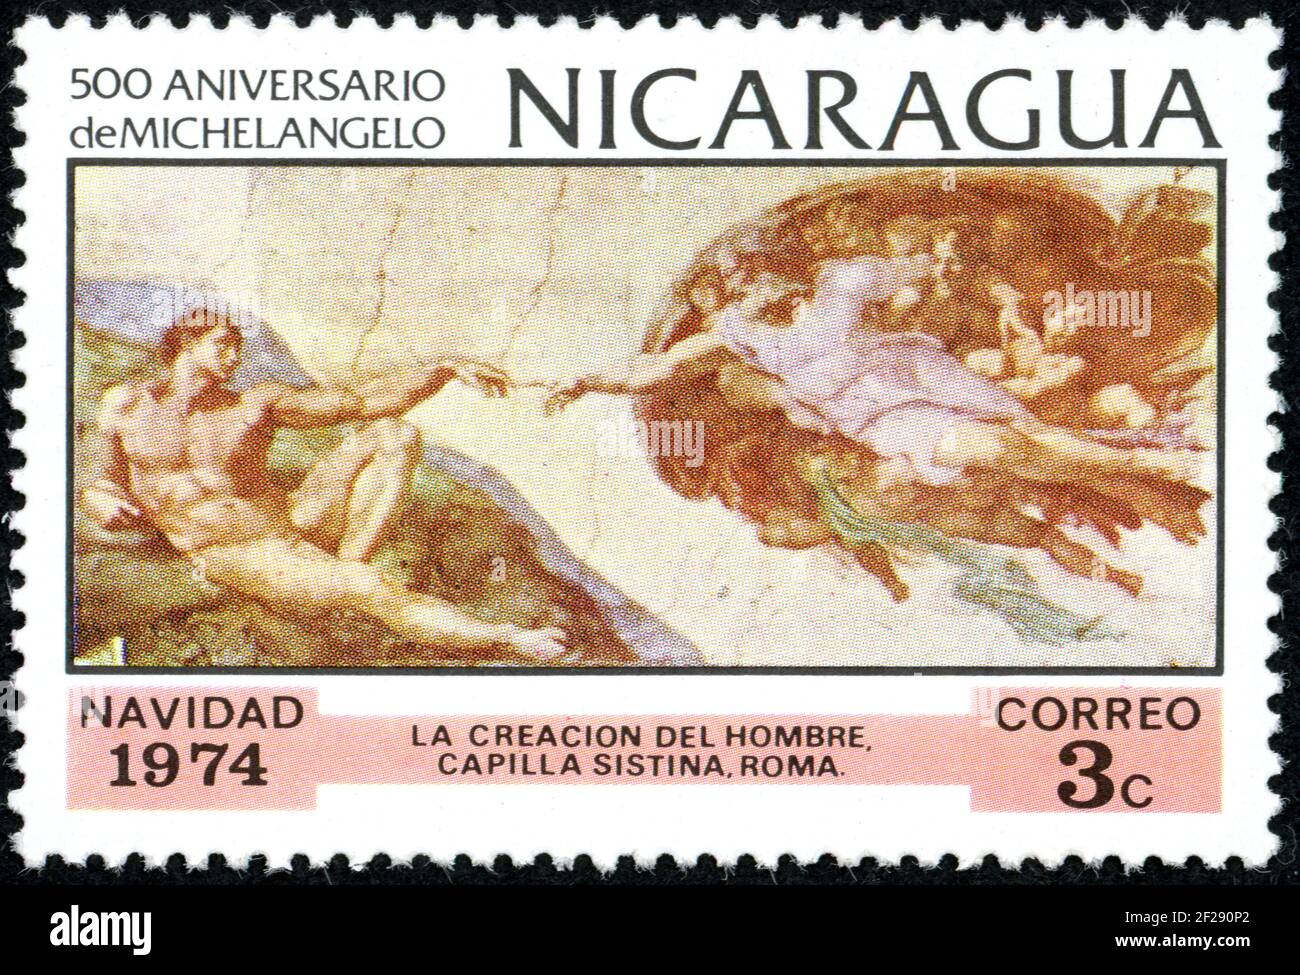 NICARAGUA - UM 1974: Eine in Nicaragua gedruckte Briefmarke, Weihnachtsausgabe, zeigt das Gemälde von Michelangelo - die Schöpfung Adams, um 1974 Stockfoto